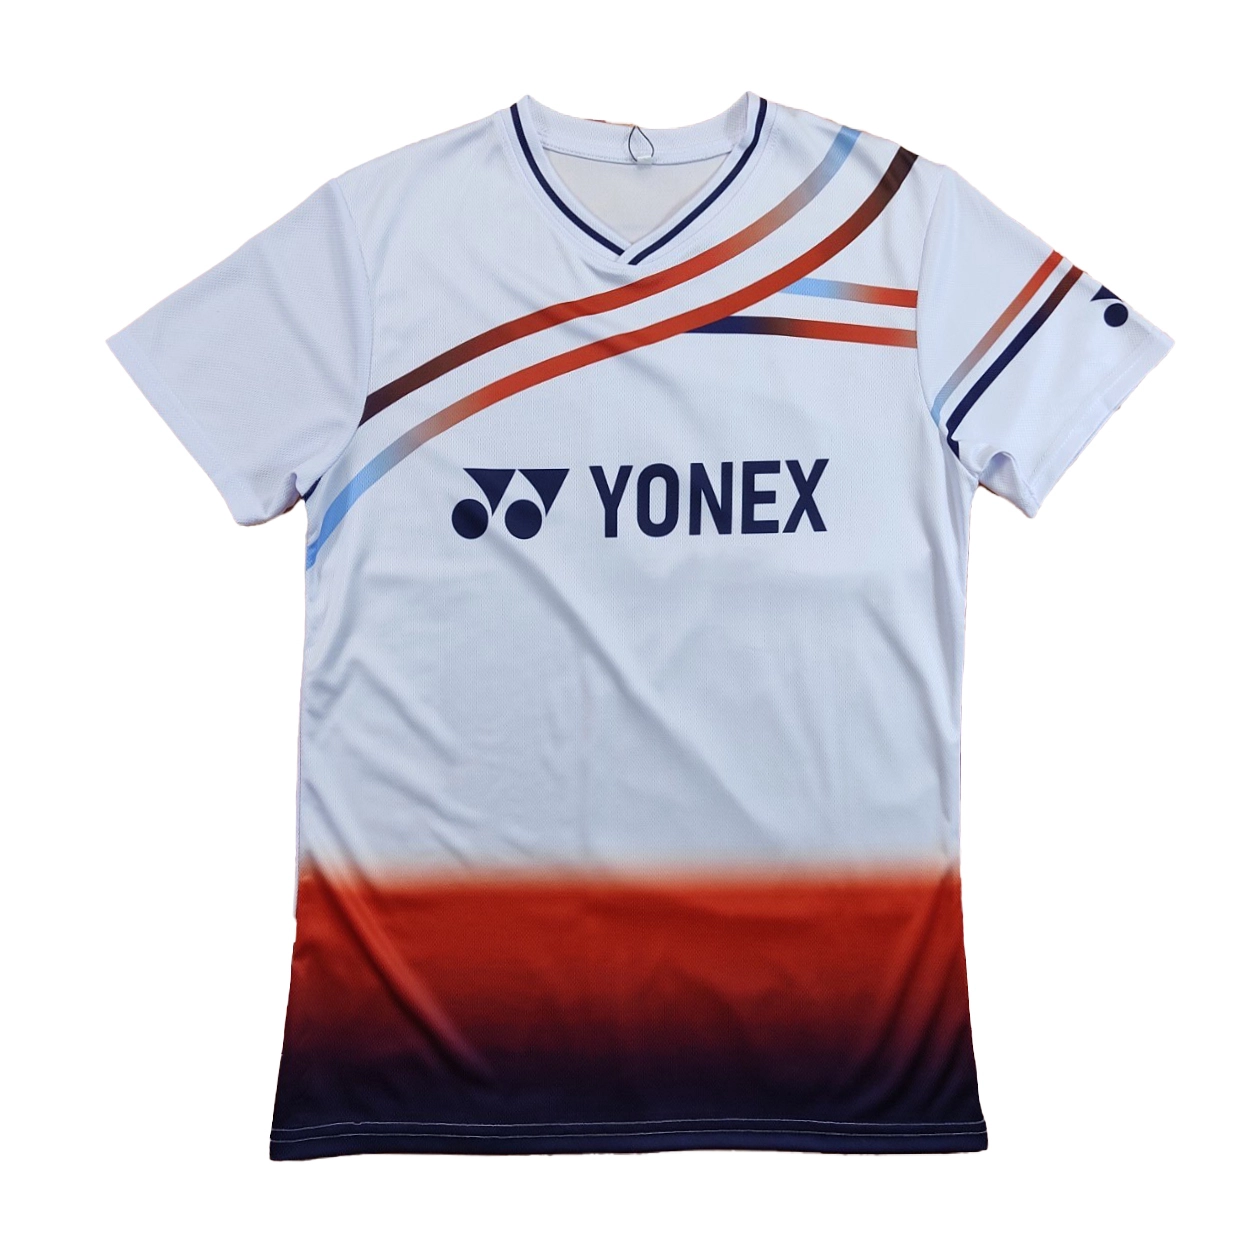 Áo cầu lông Yonex A344 nam - Trắng